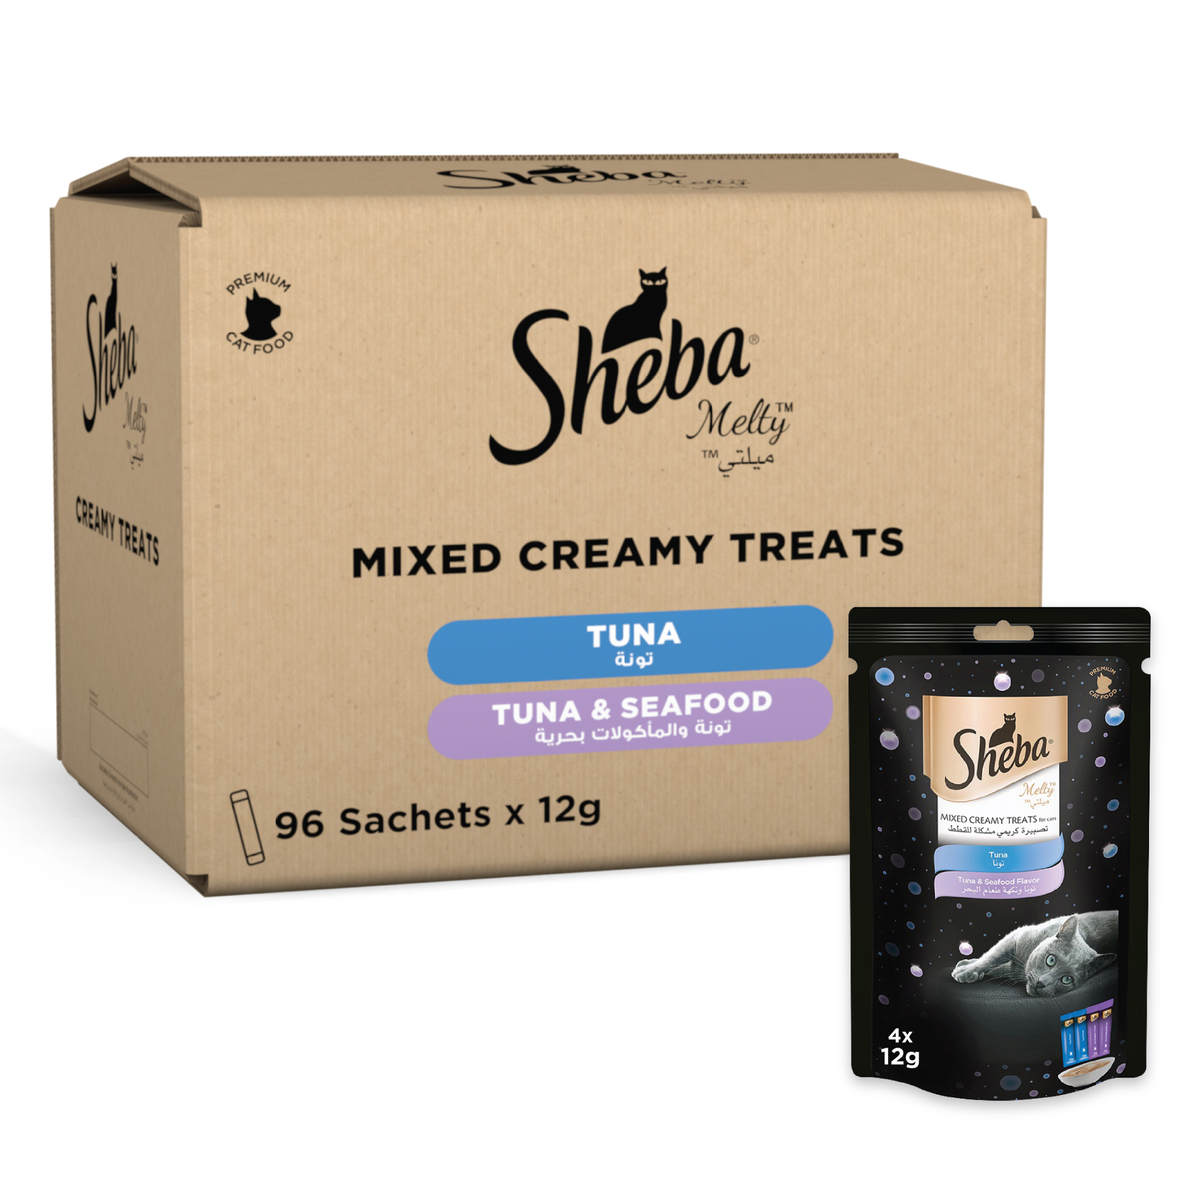 Sheba Melty Mixed Creamy Treats For Cats Tuna & Seafood 48 g